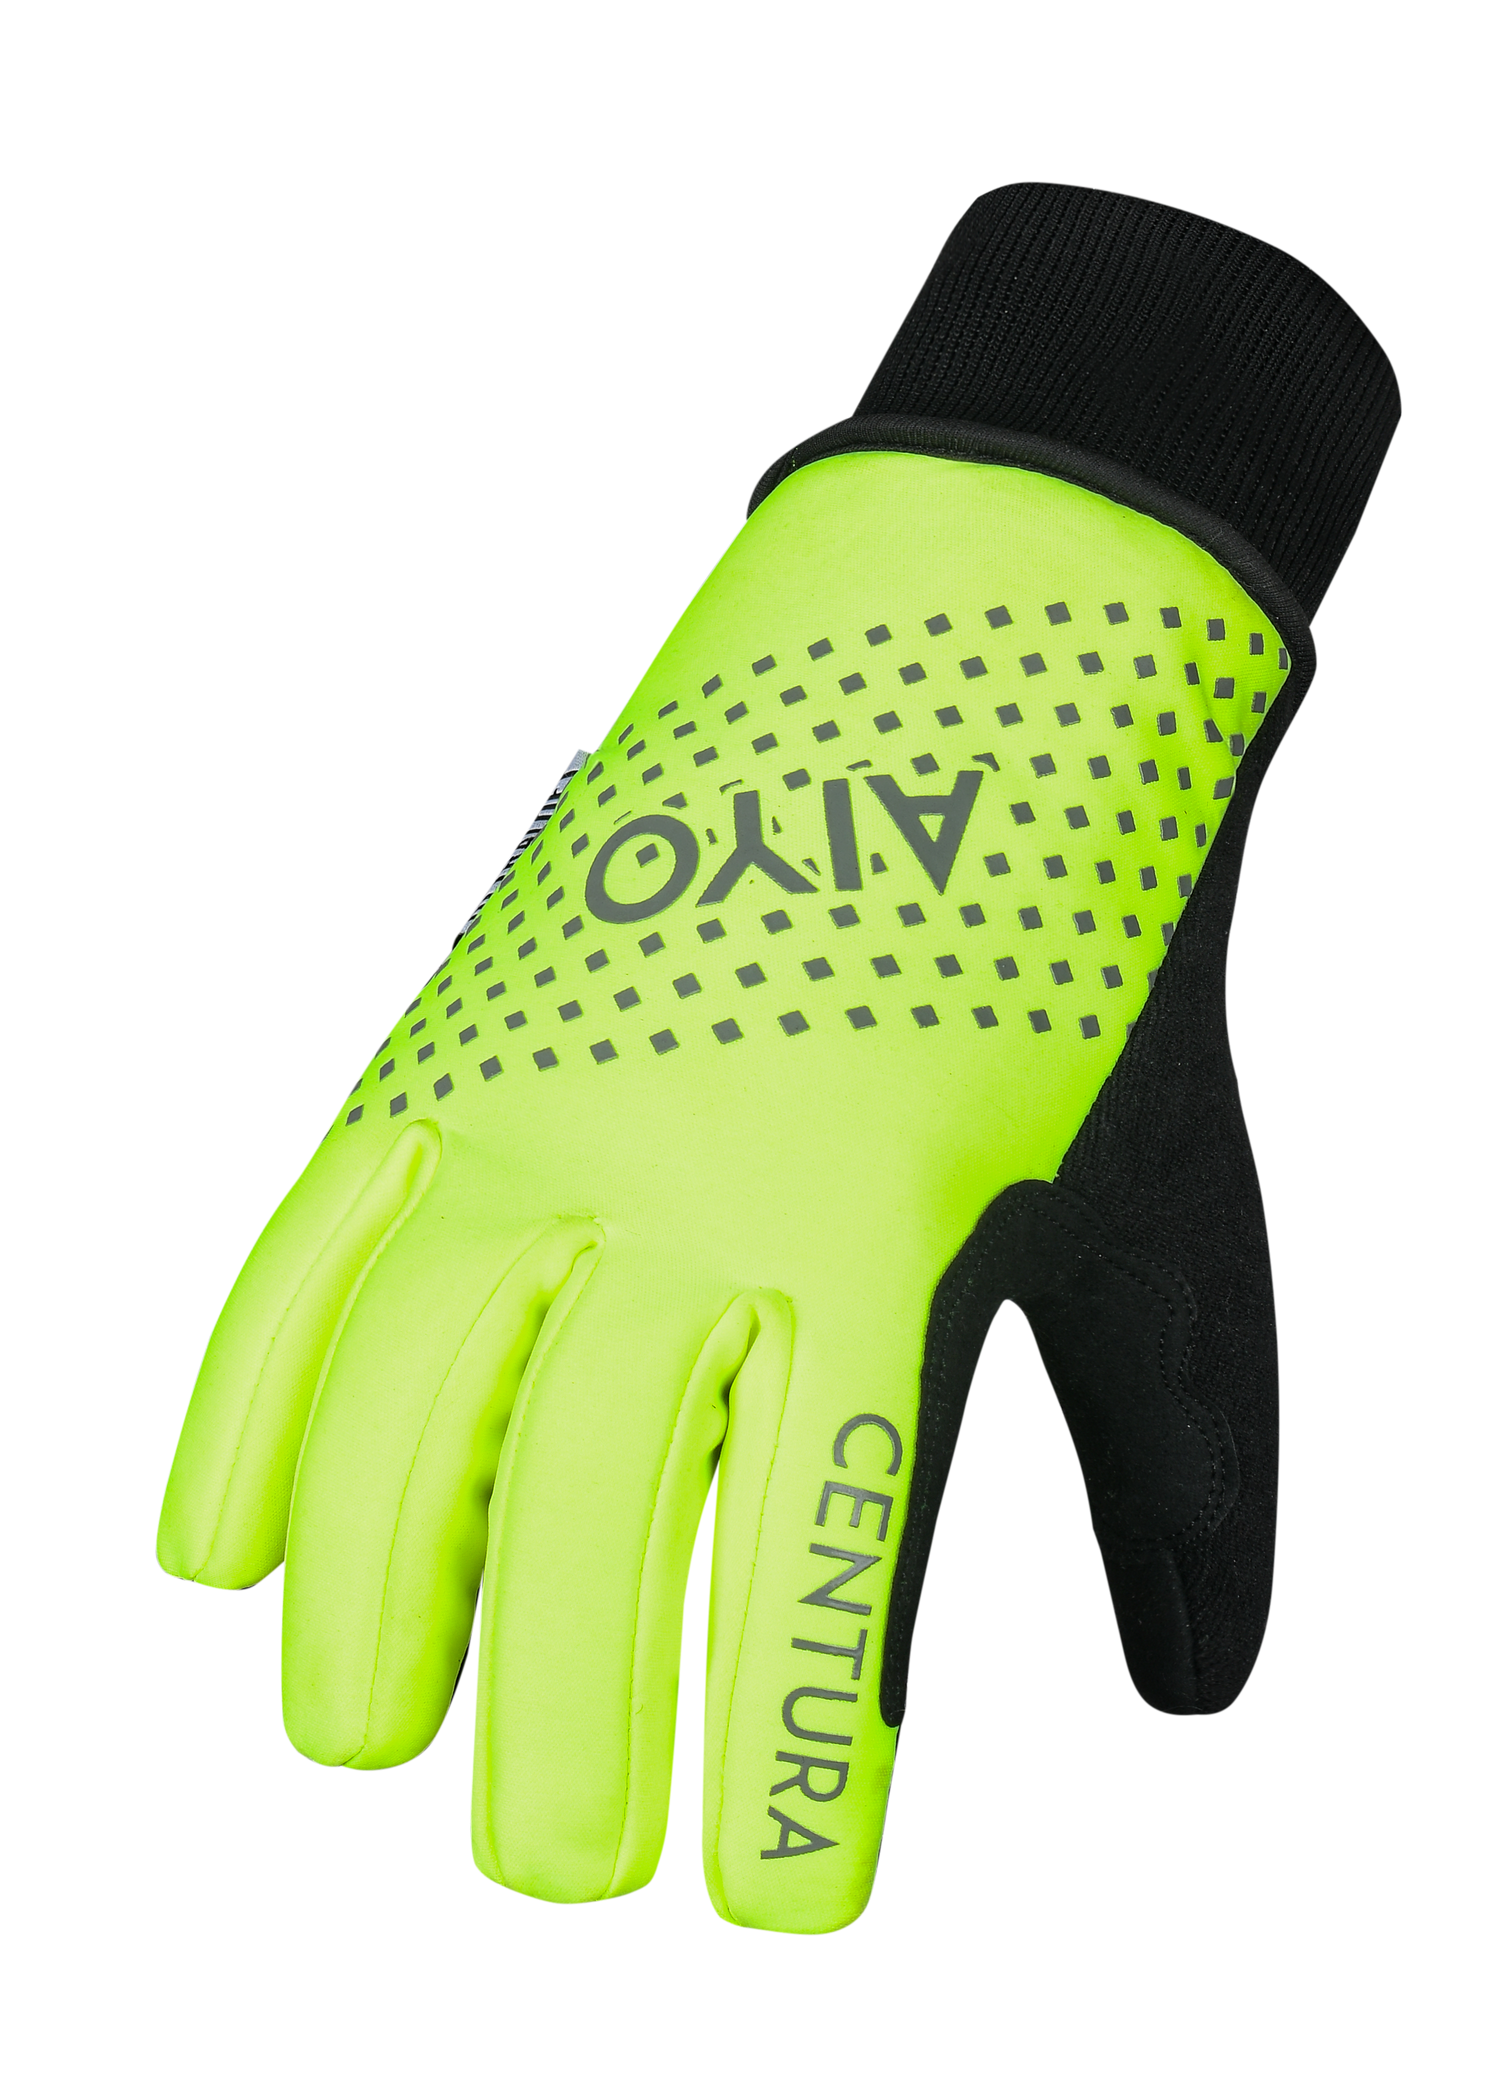 Alcantara Nightvision Insulated Waterproof Glove